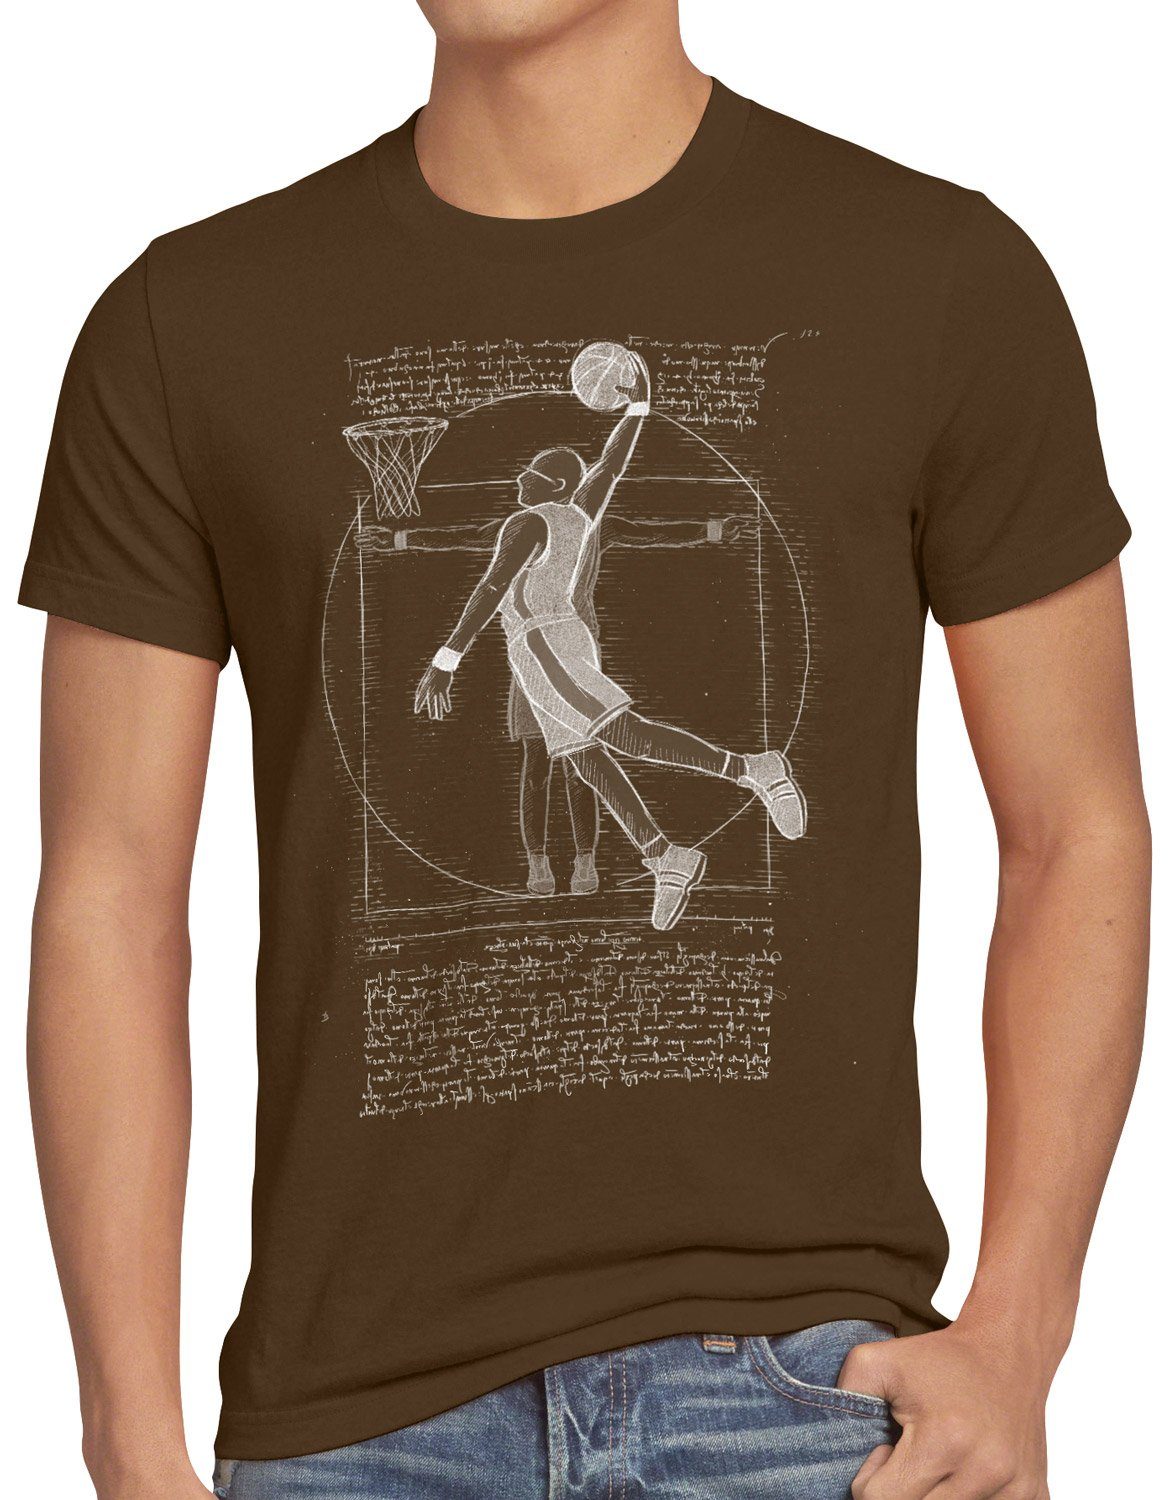 style3 Print-Shirt Herren T-Shirt Vitruvianischer Basketballspieler ballsport da vinci mensch braun